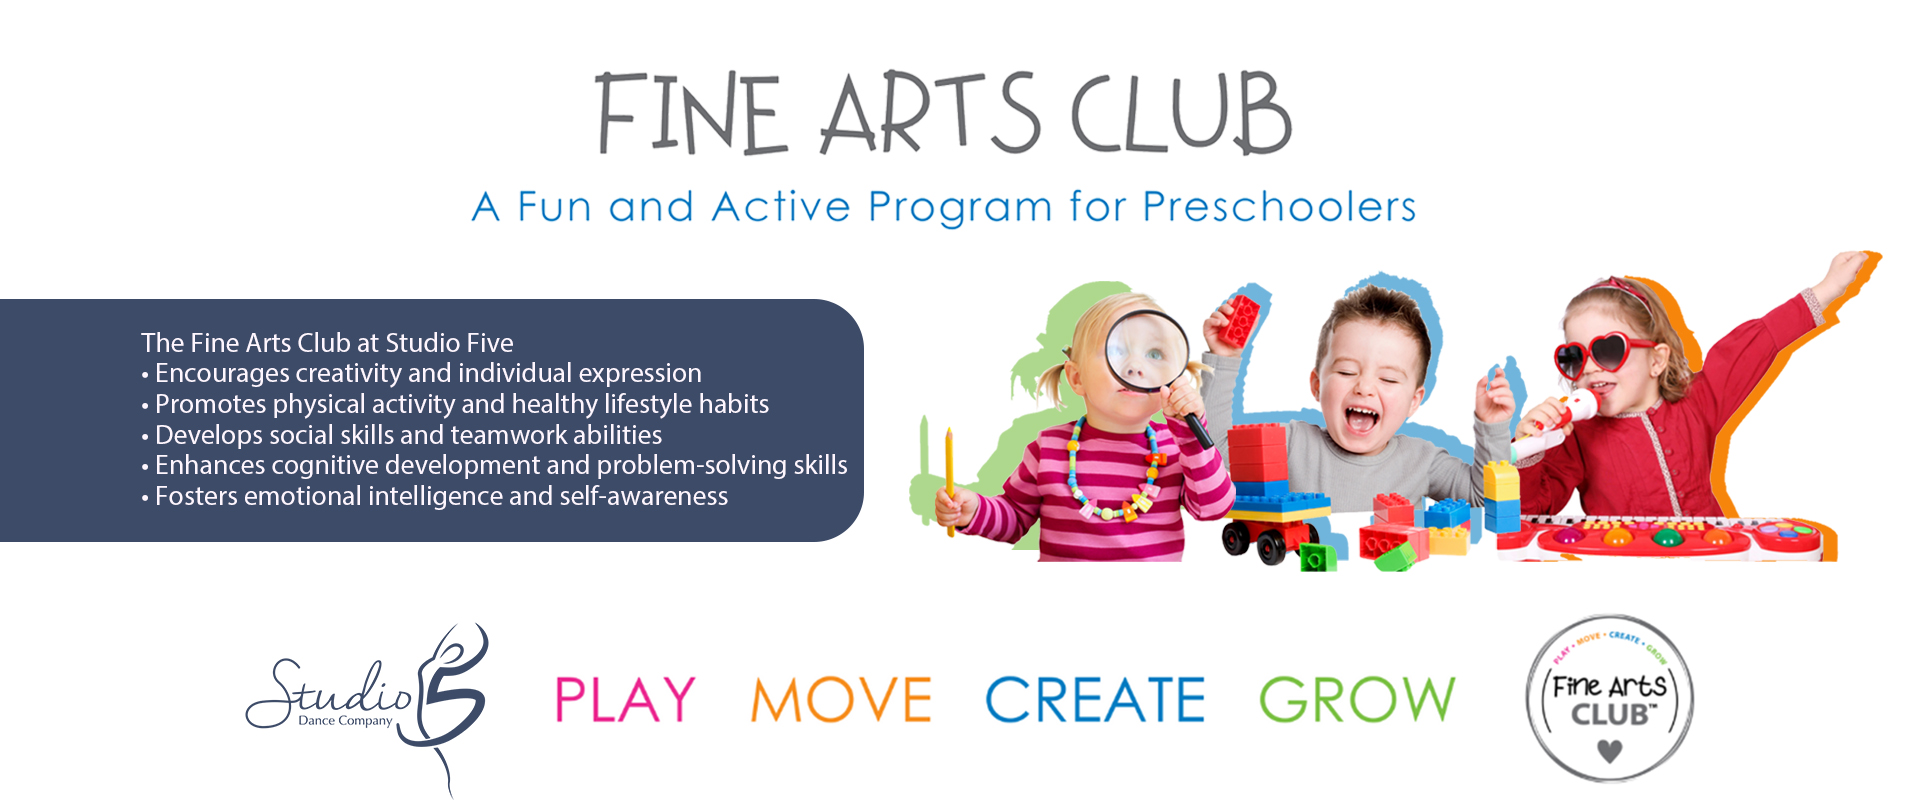 Fine Arts Club Preschool at Studio Five